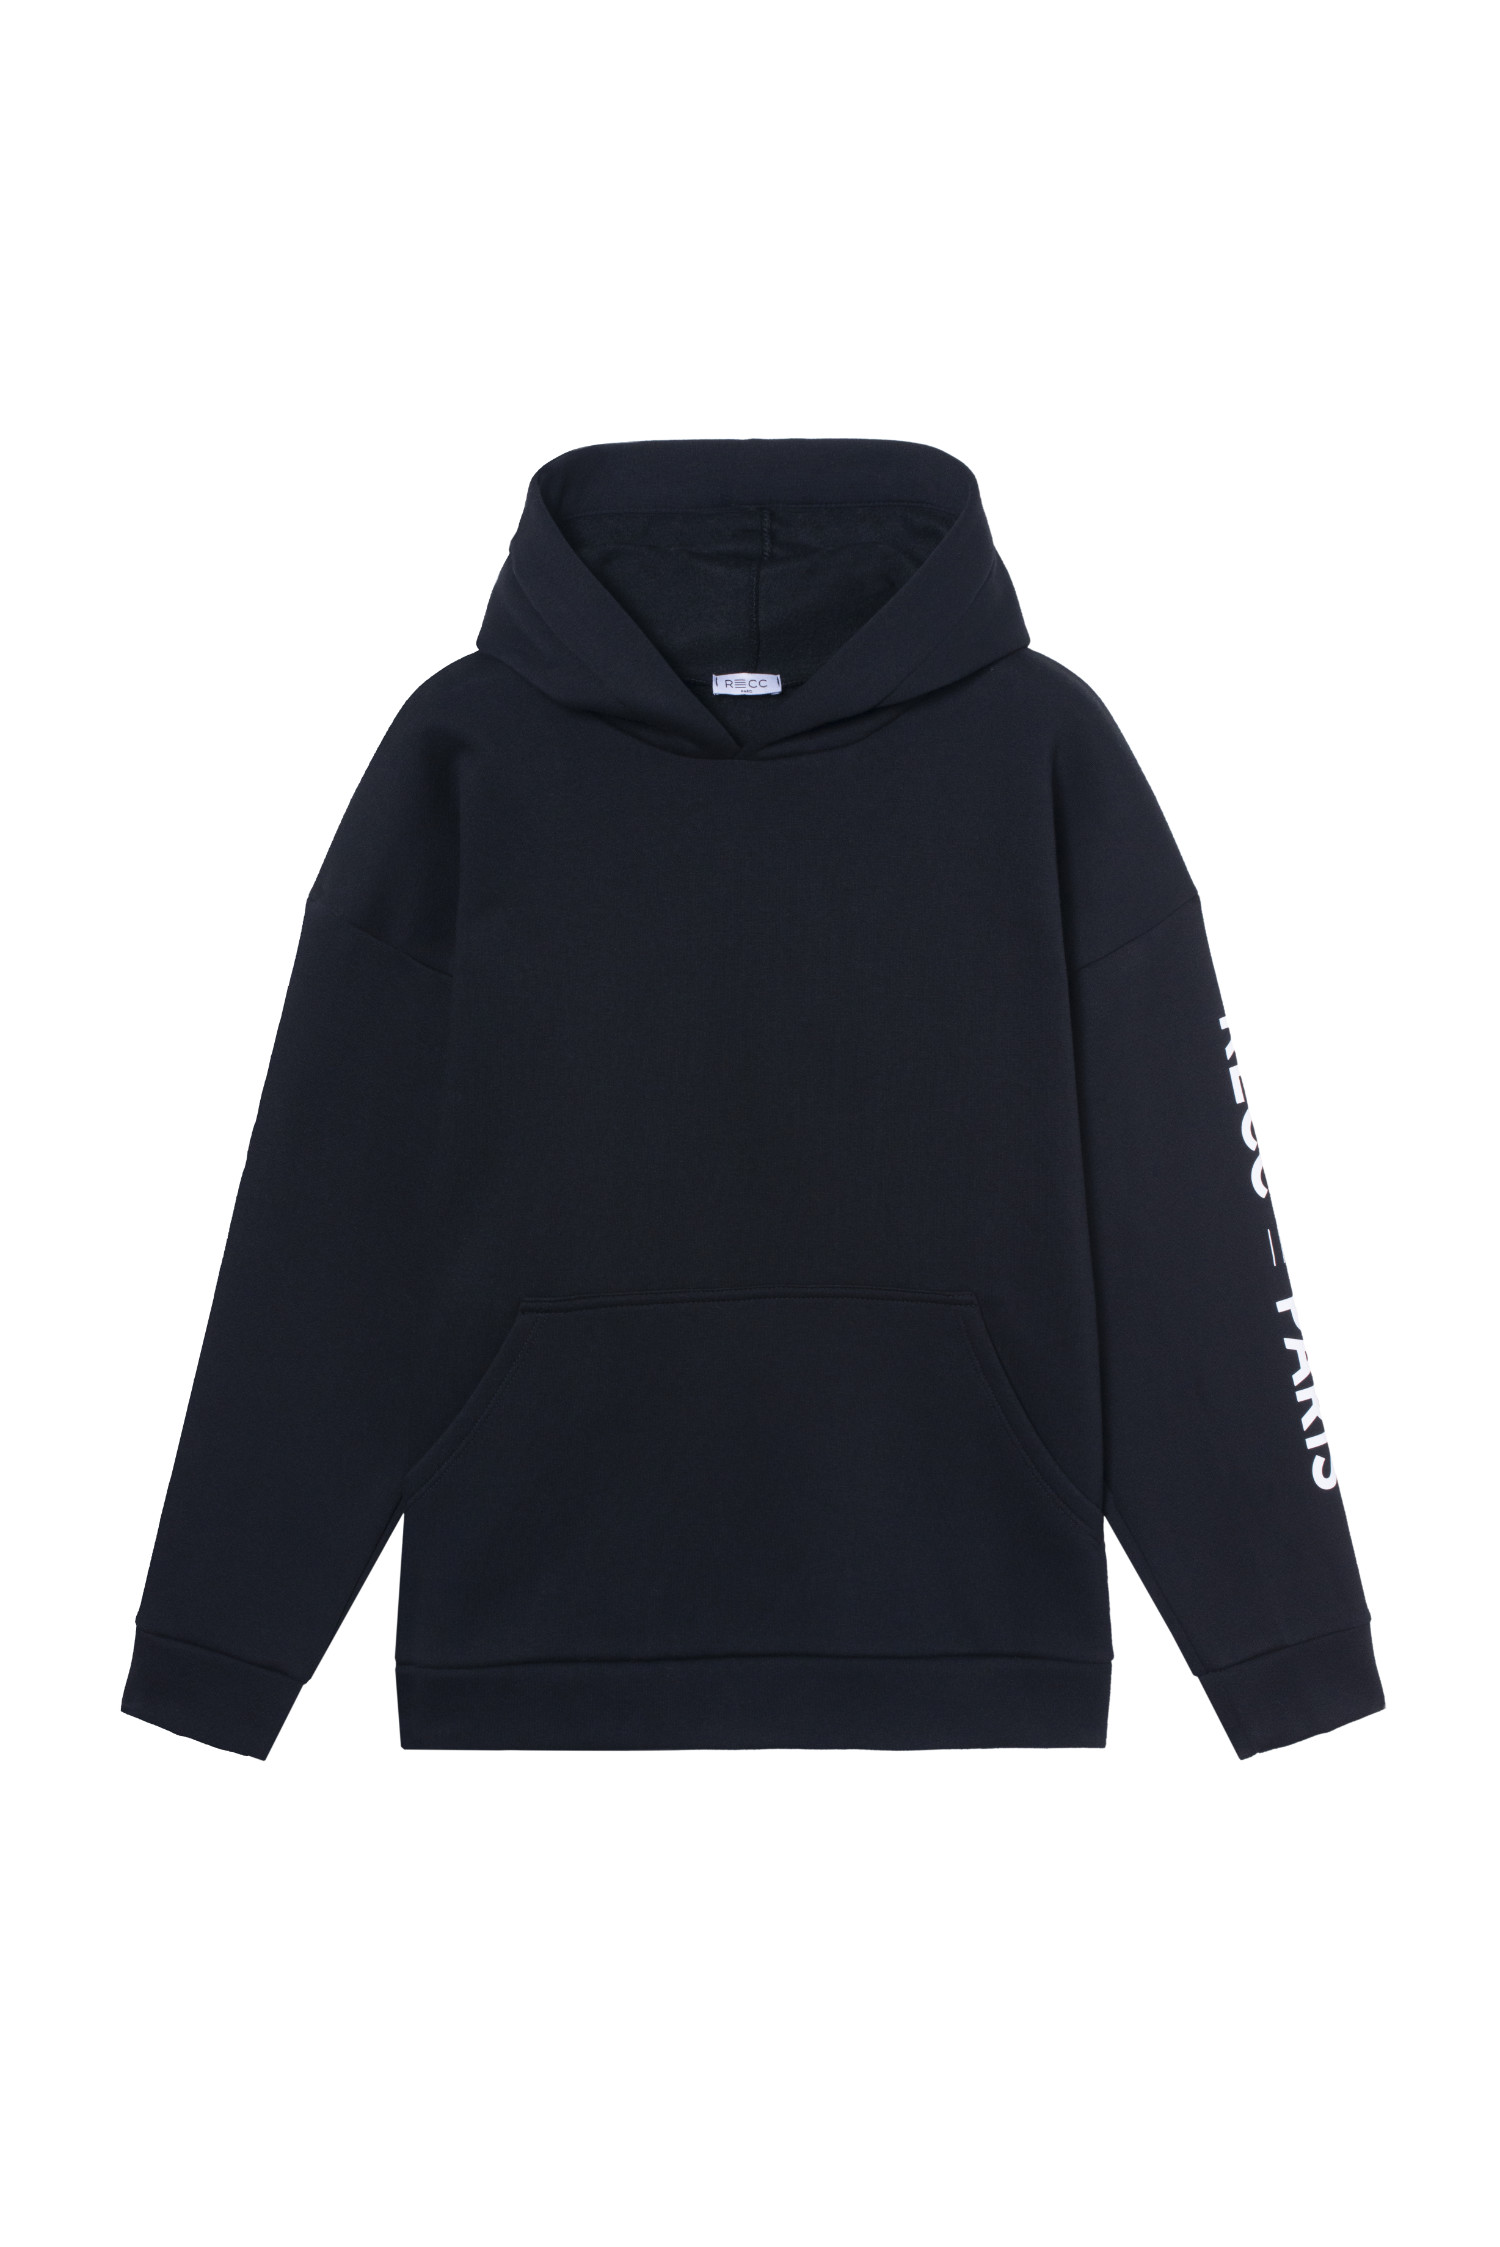 RECC Paris Black Sweater